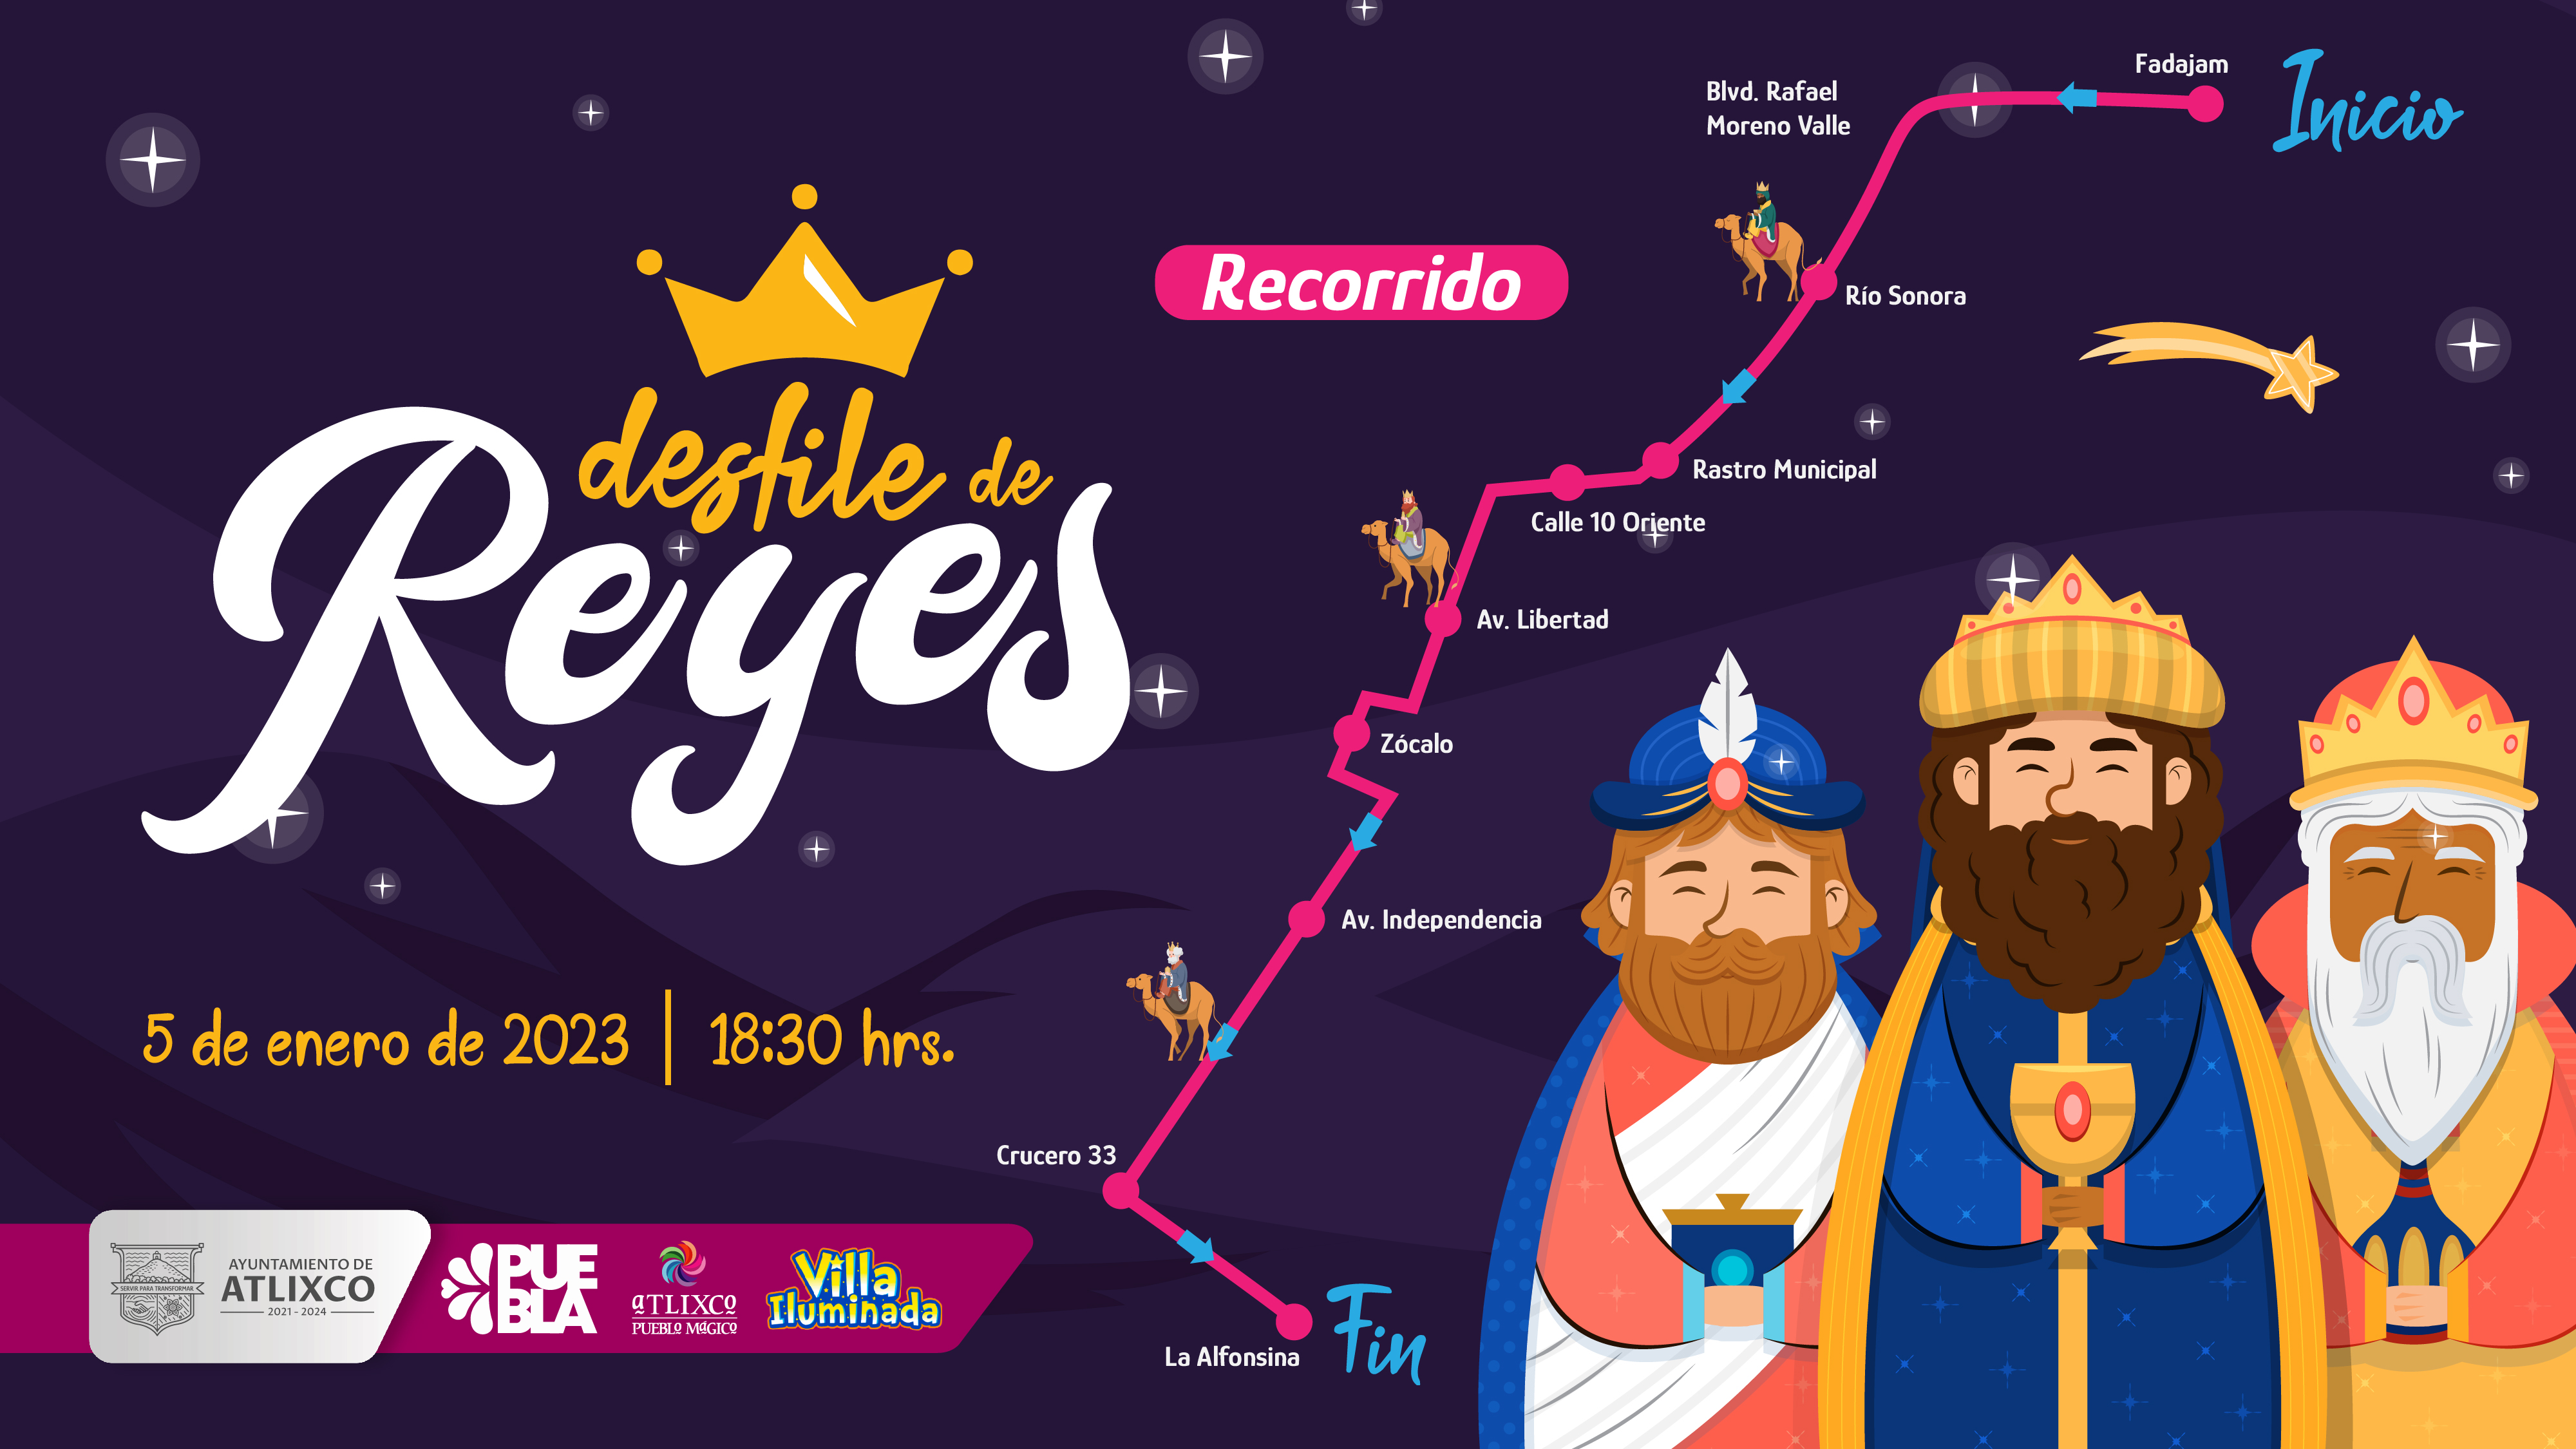 Esta será la ruta de los Reyes Magos en Atlixco el 5 de enero